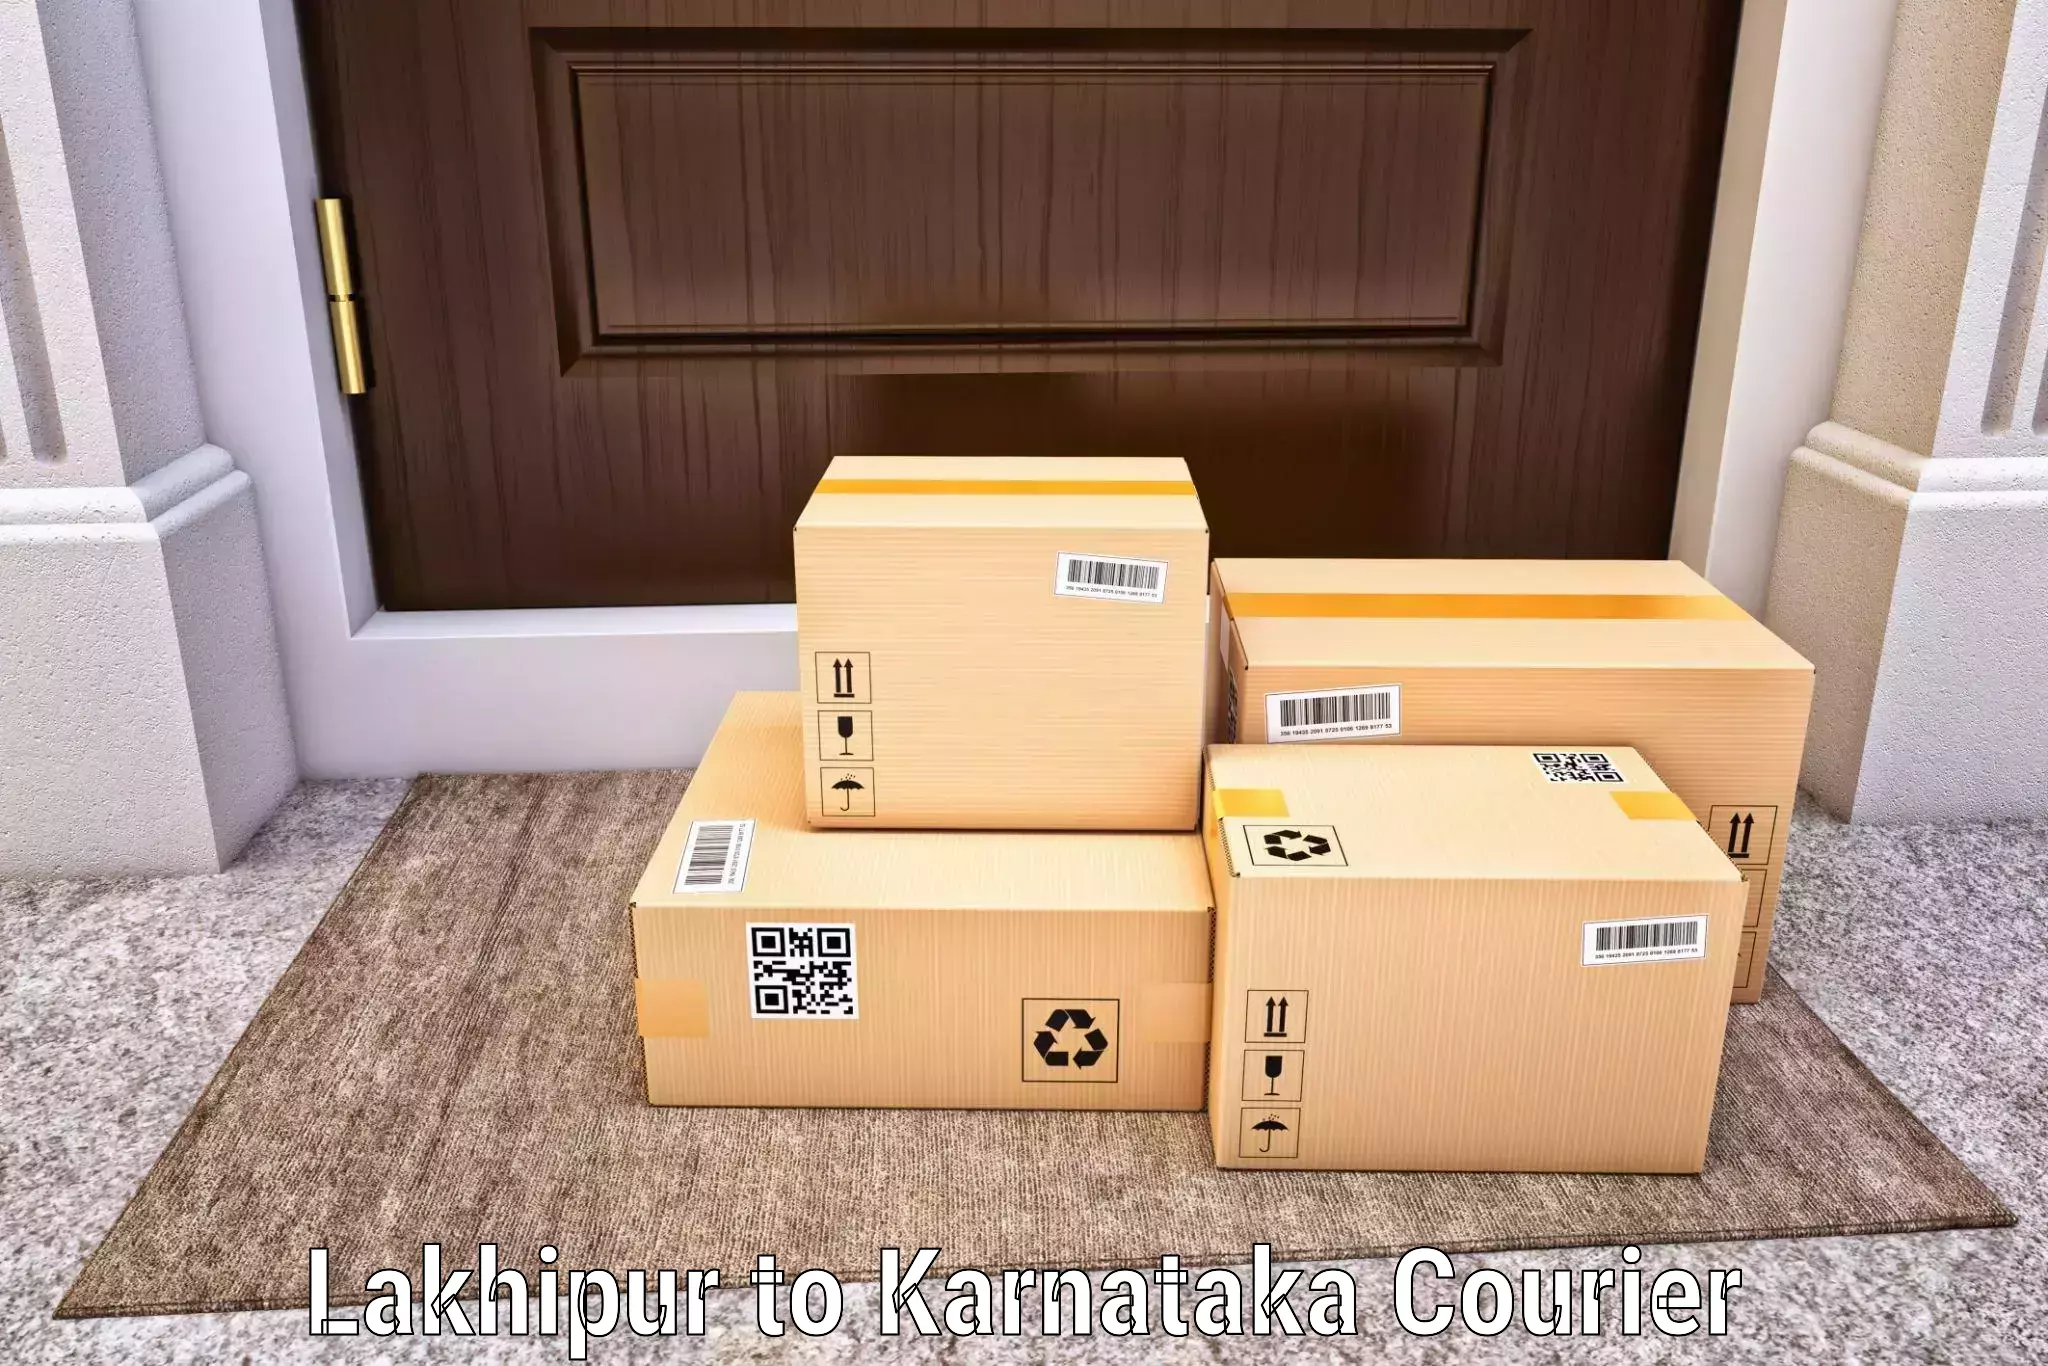 High-capacity shipping options Lakhipur to Harohalli